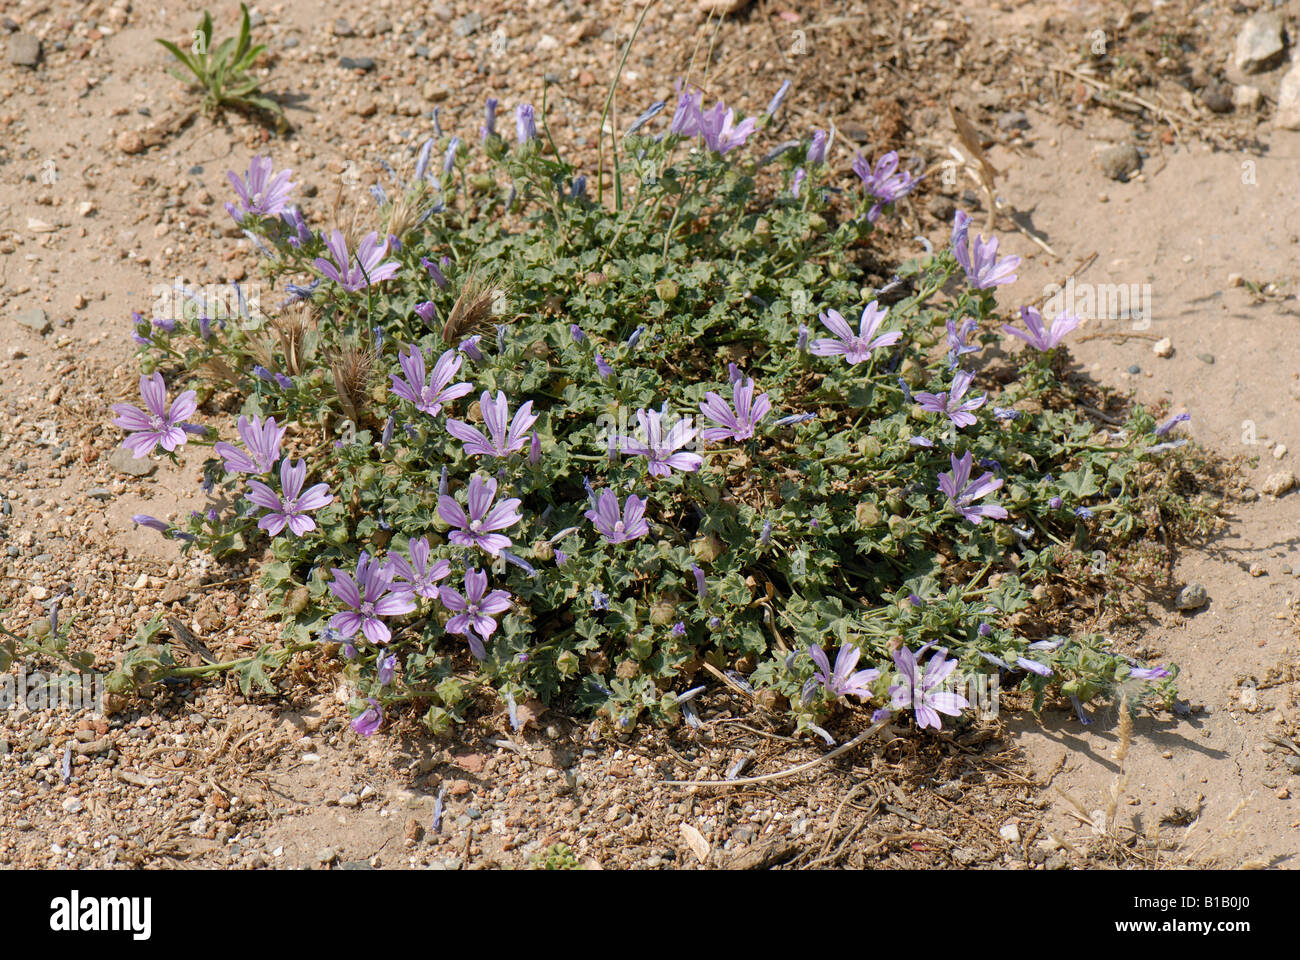 Malva Malva sylvestris poco común atrofiado planta costera Creta Foto de stock